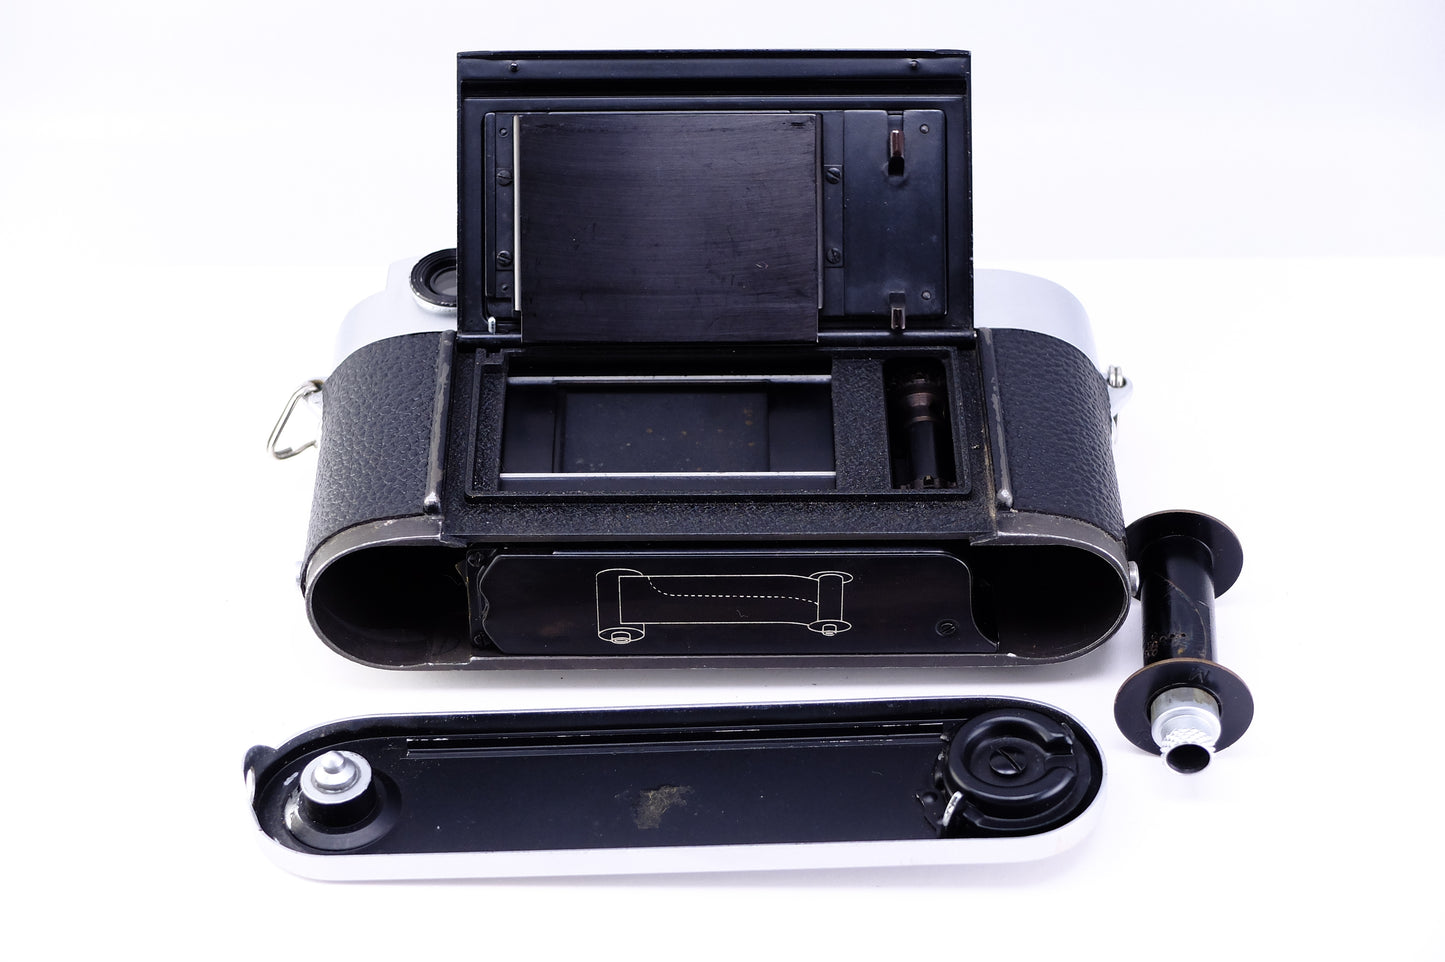 Leica M3 ダブルストローク (1958年製)[1182566205811]